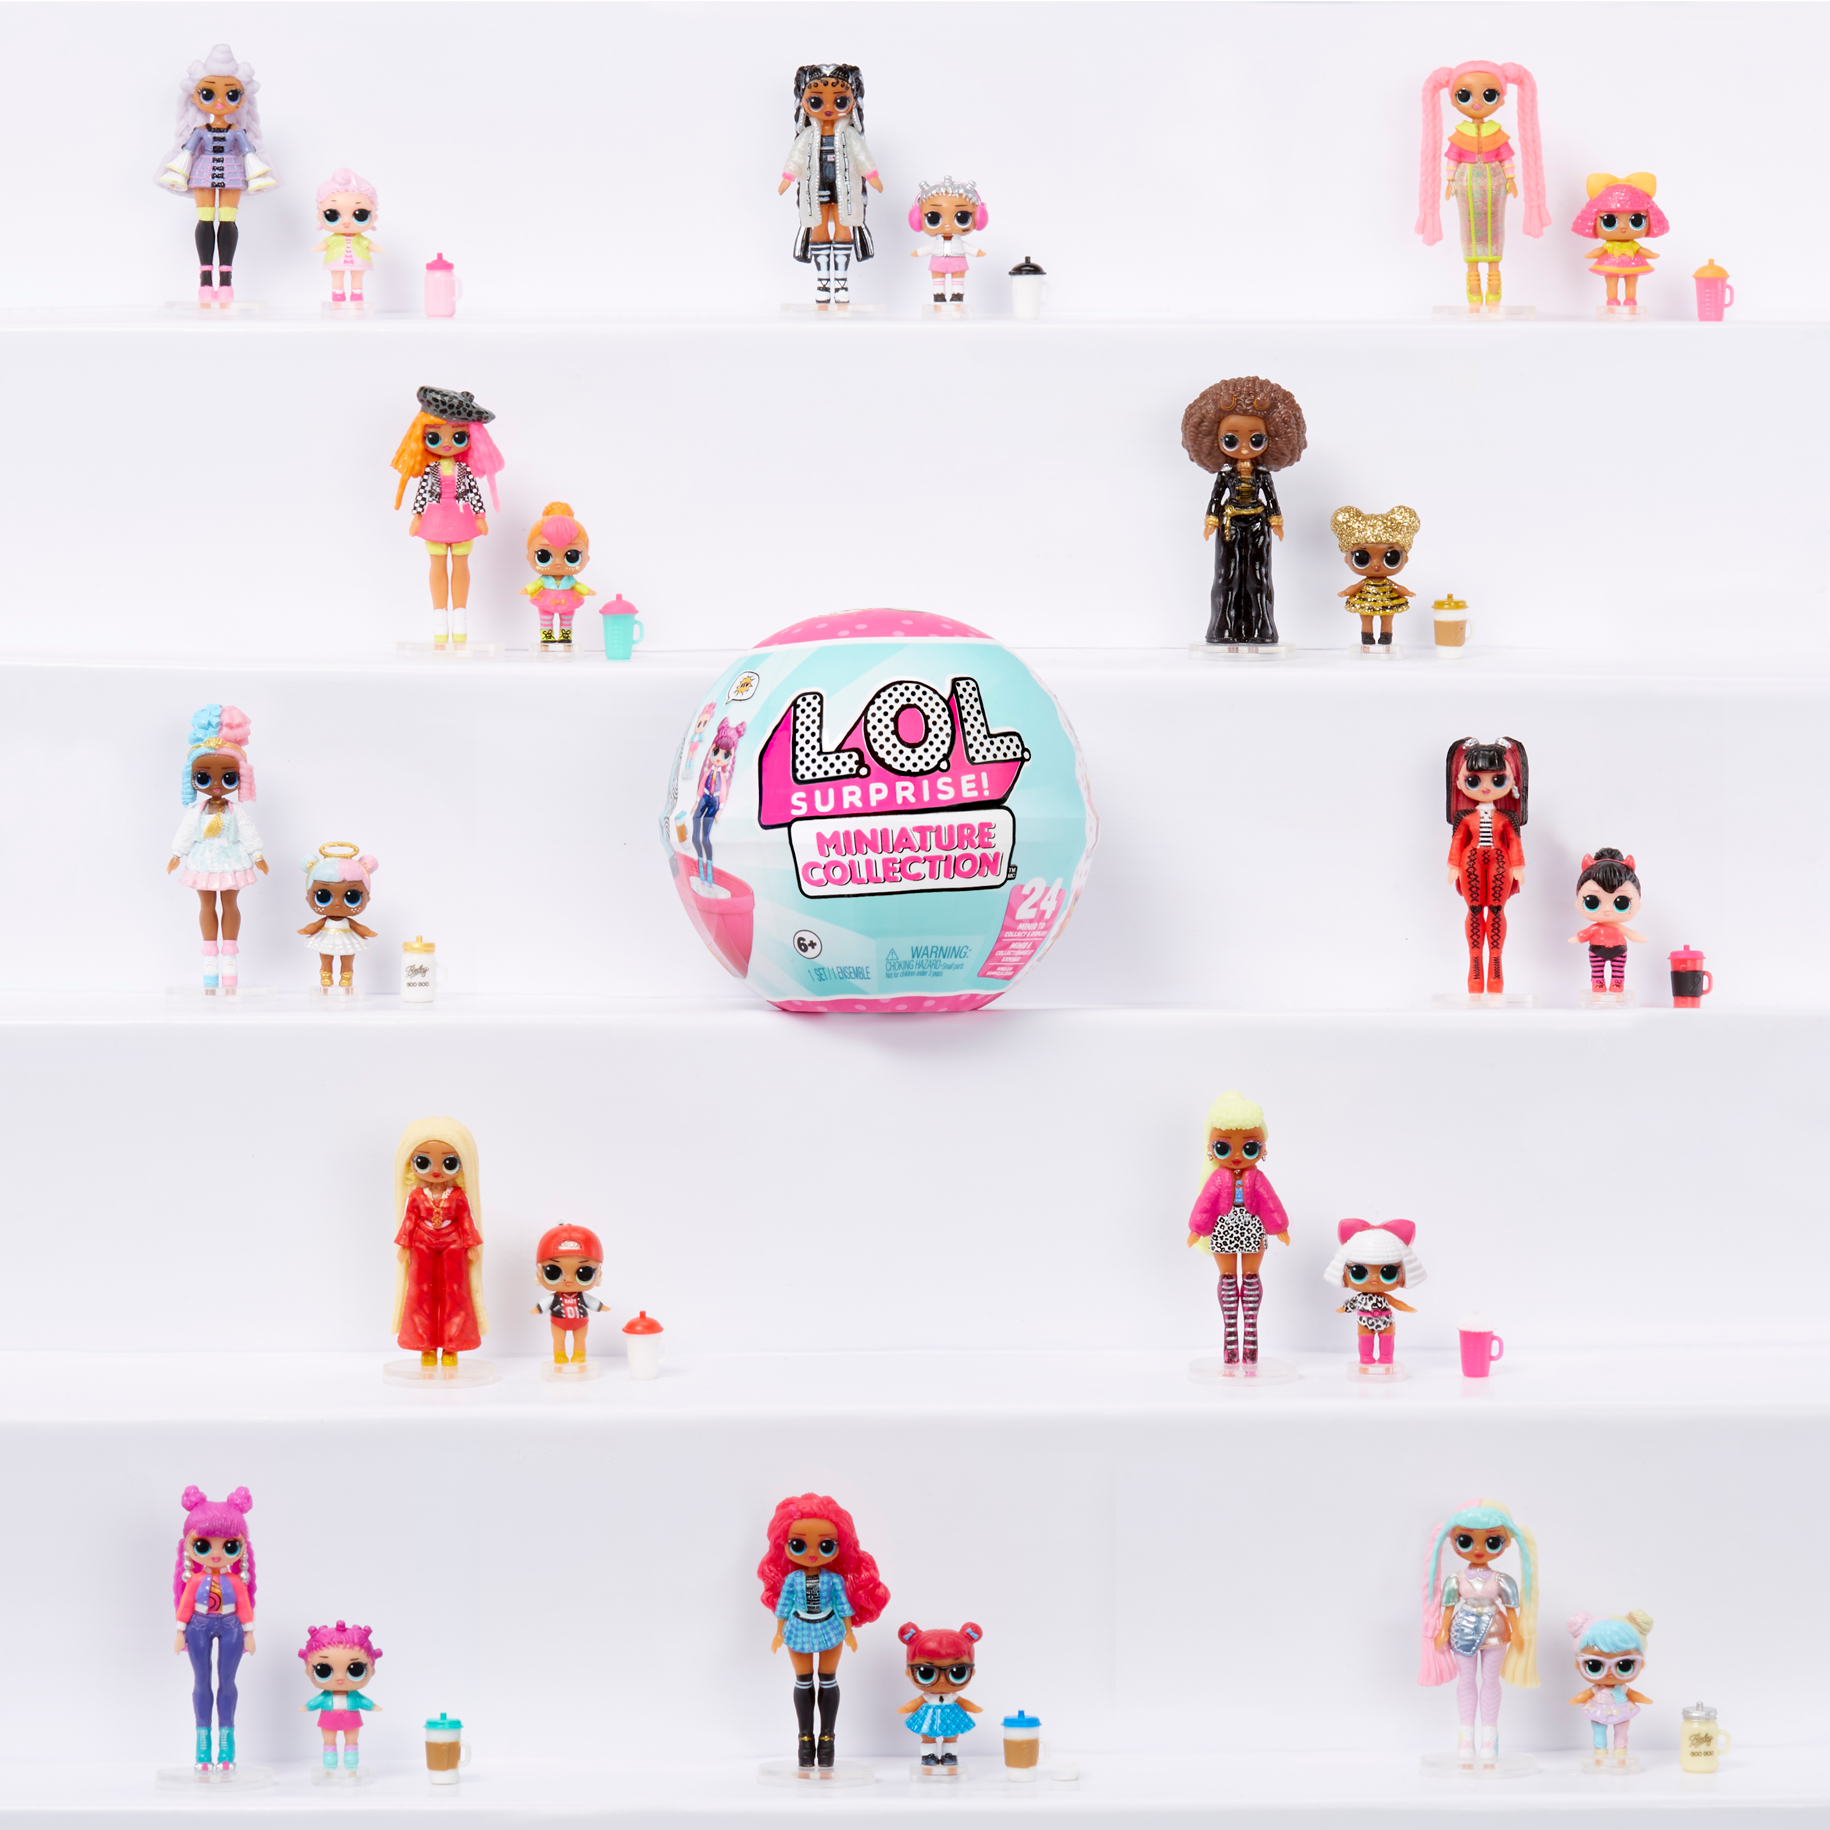 Lol surprise collezione in miniatura. include una versione in miniatura di una fashion doll e della sua sorellina lil sister lol omg, accessori e confezione in miniatura - LOL